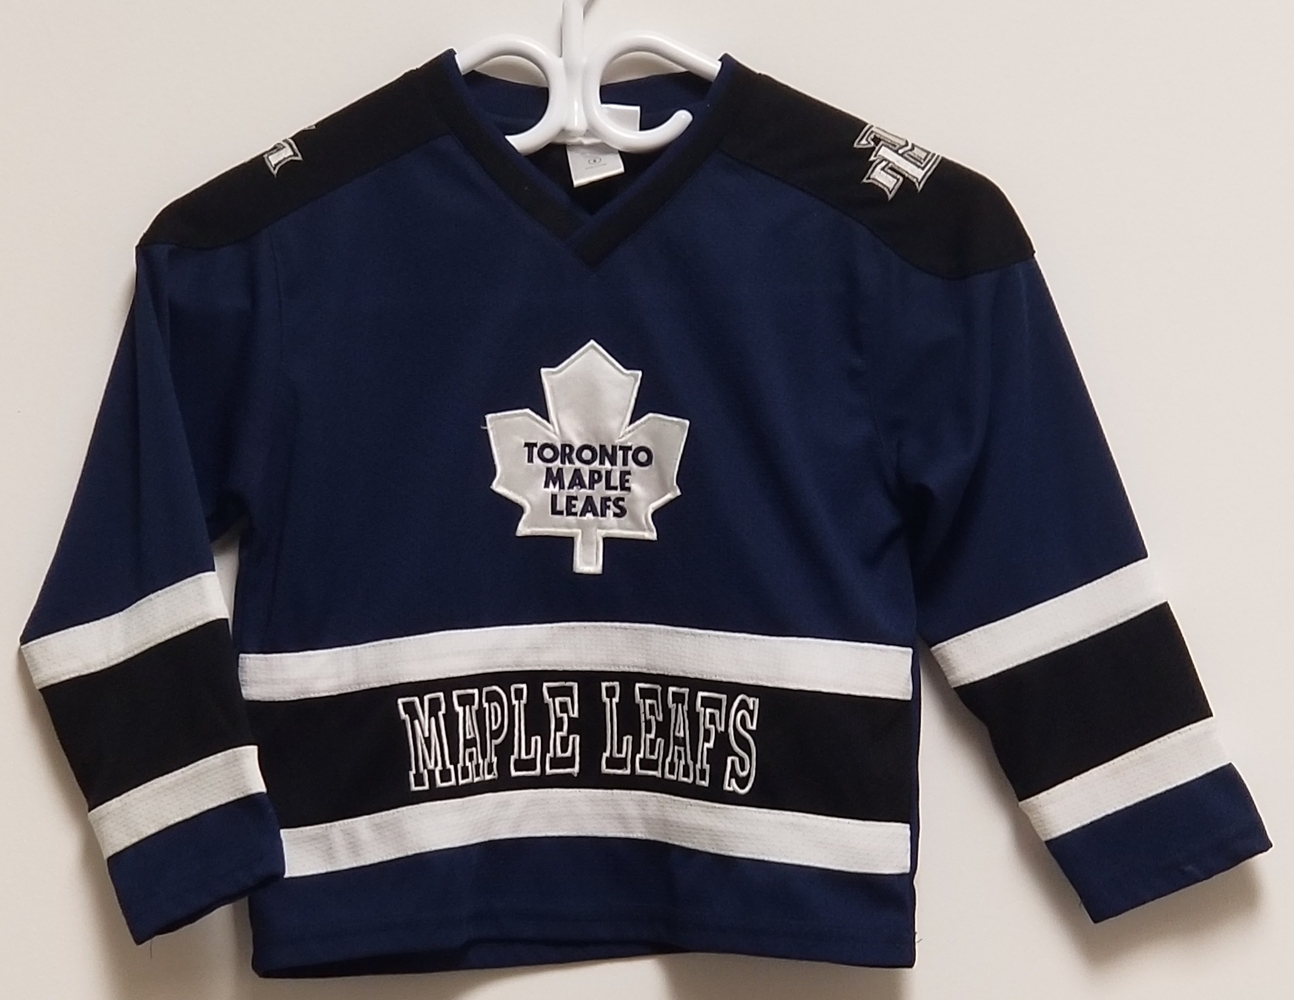 Toronto Maple Leafs Kids Jerseys, Maple Leafs Uniforms